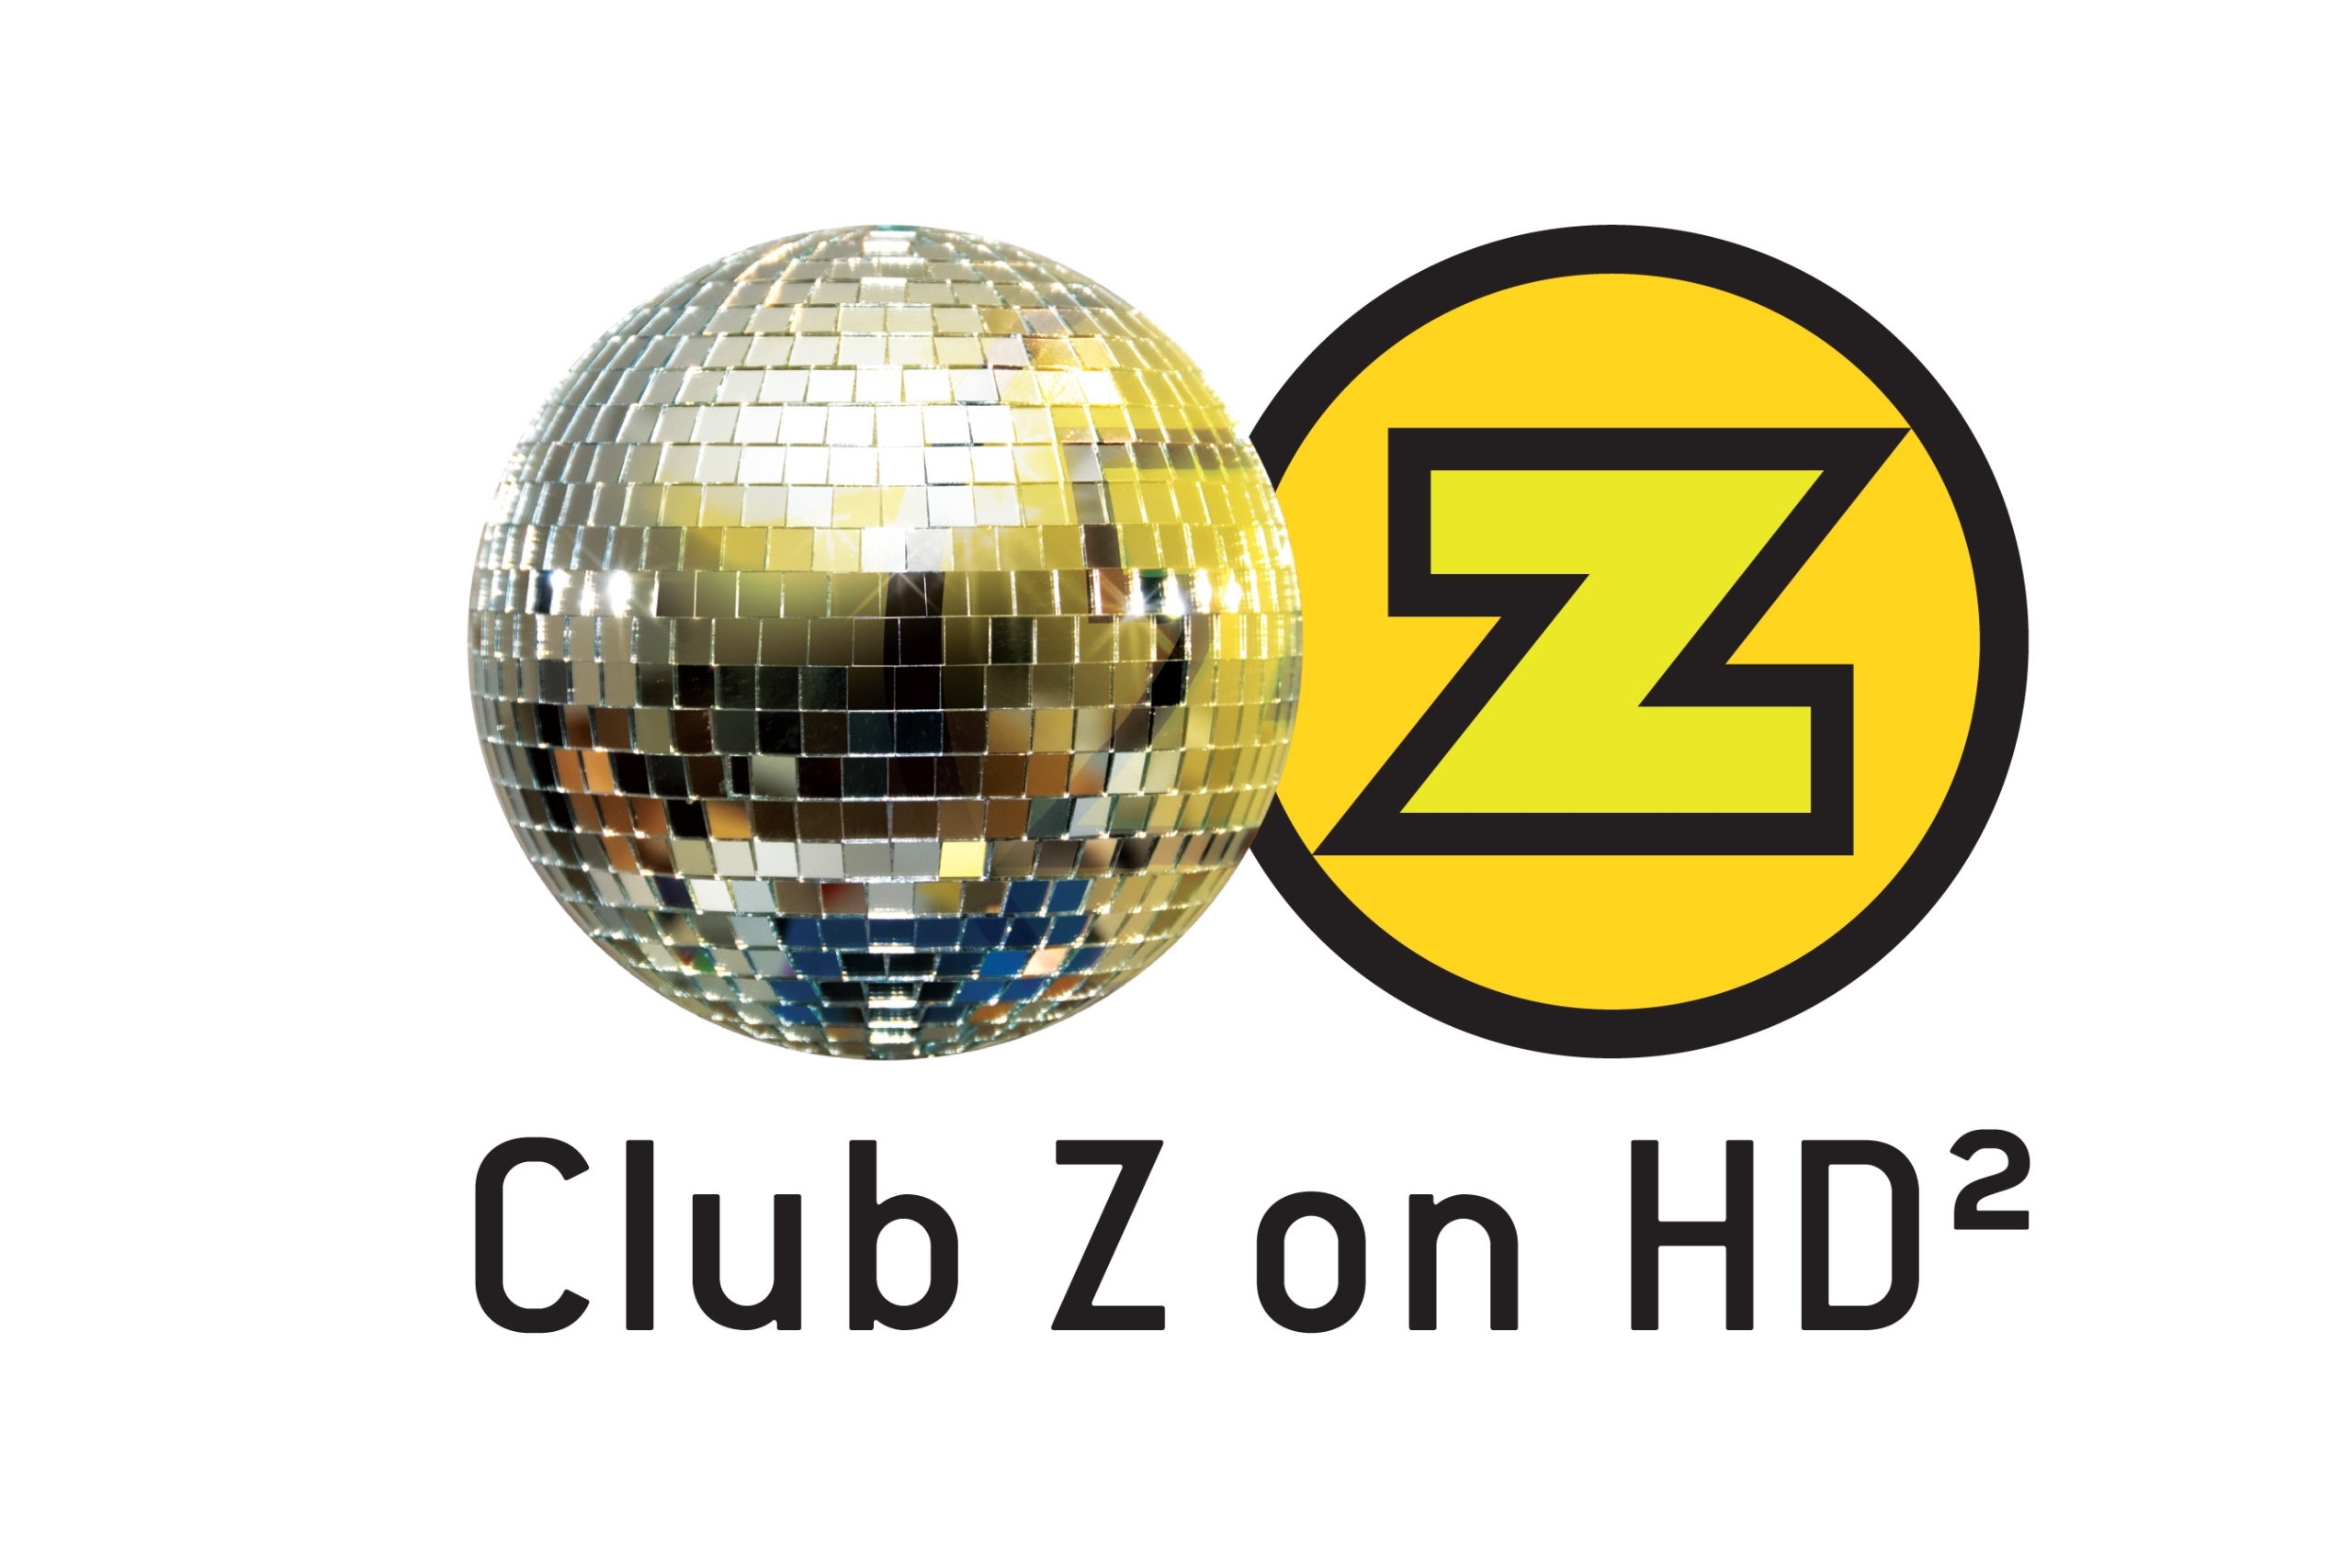 Club Z on HD2